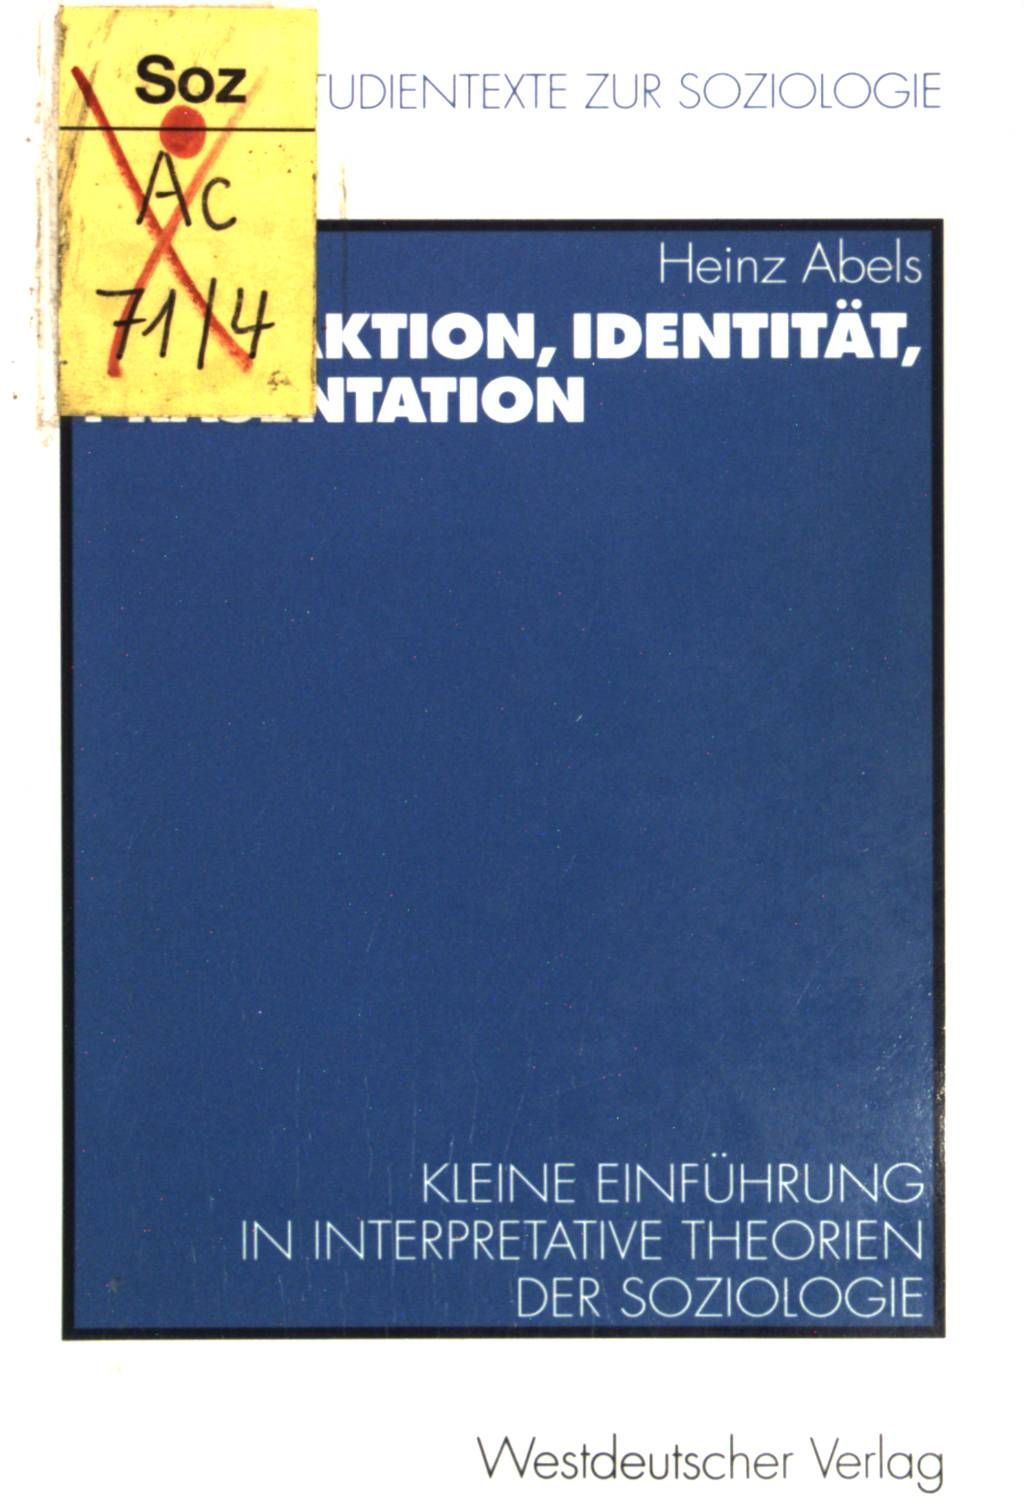 Interaktion, Identität, Präsentation : Kleine Einführung in interpretative Theorien der Soziologie. Hagener Studientexte zur Soziologie ; Bd. 1 - Abels, Heinz